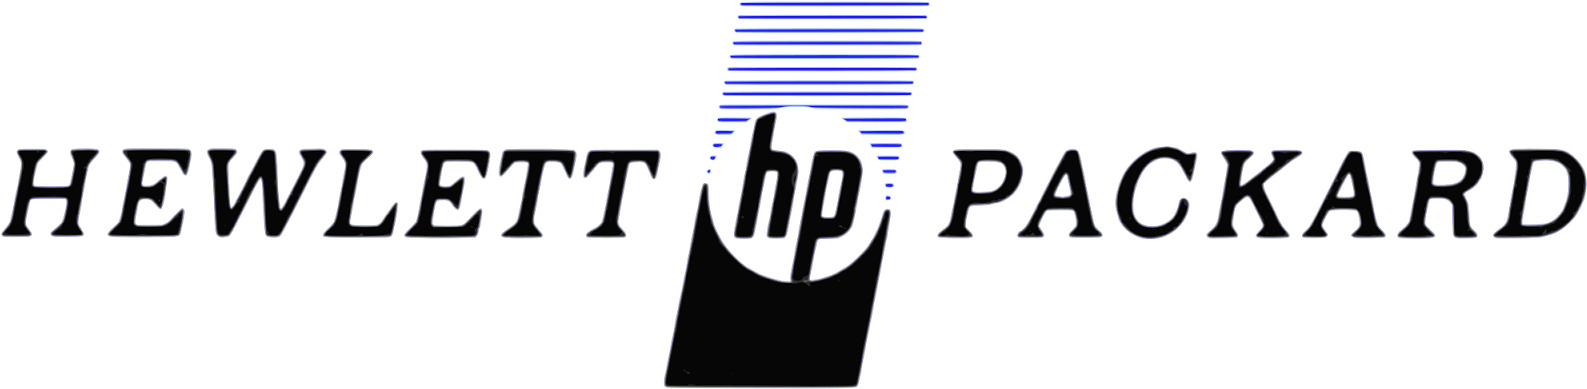 Hp Logo - First Hewlett Packard Logo Clipart (1600x400), Png Download